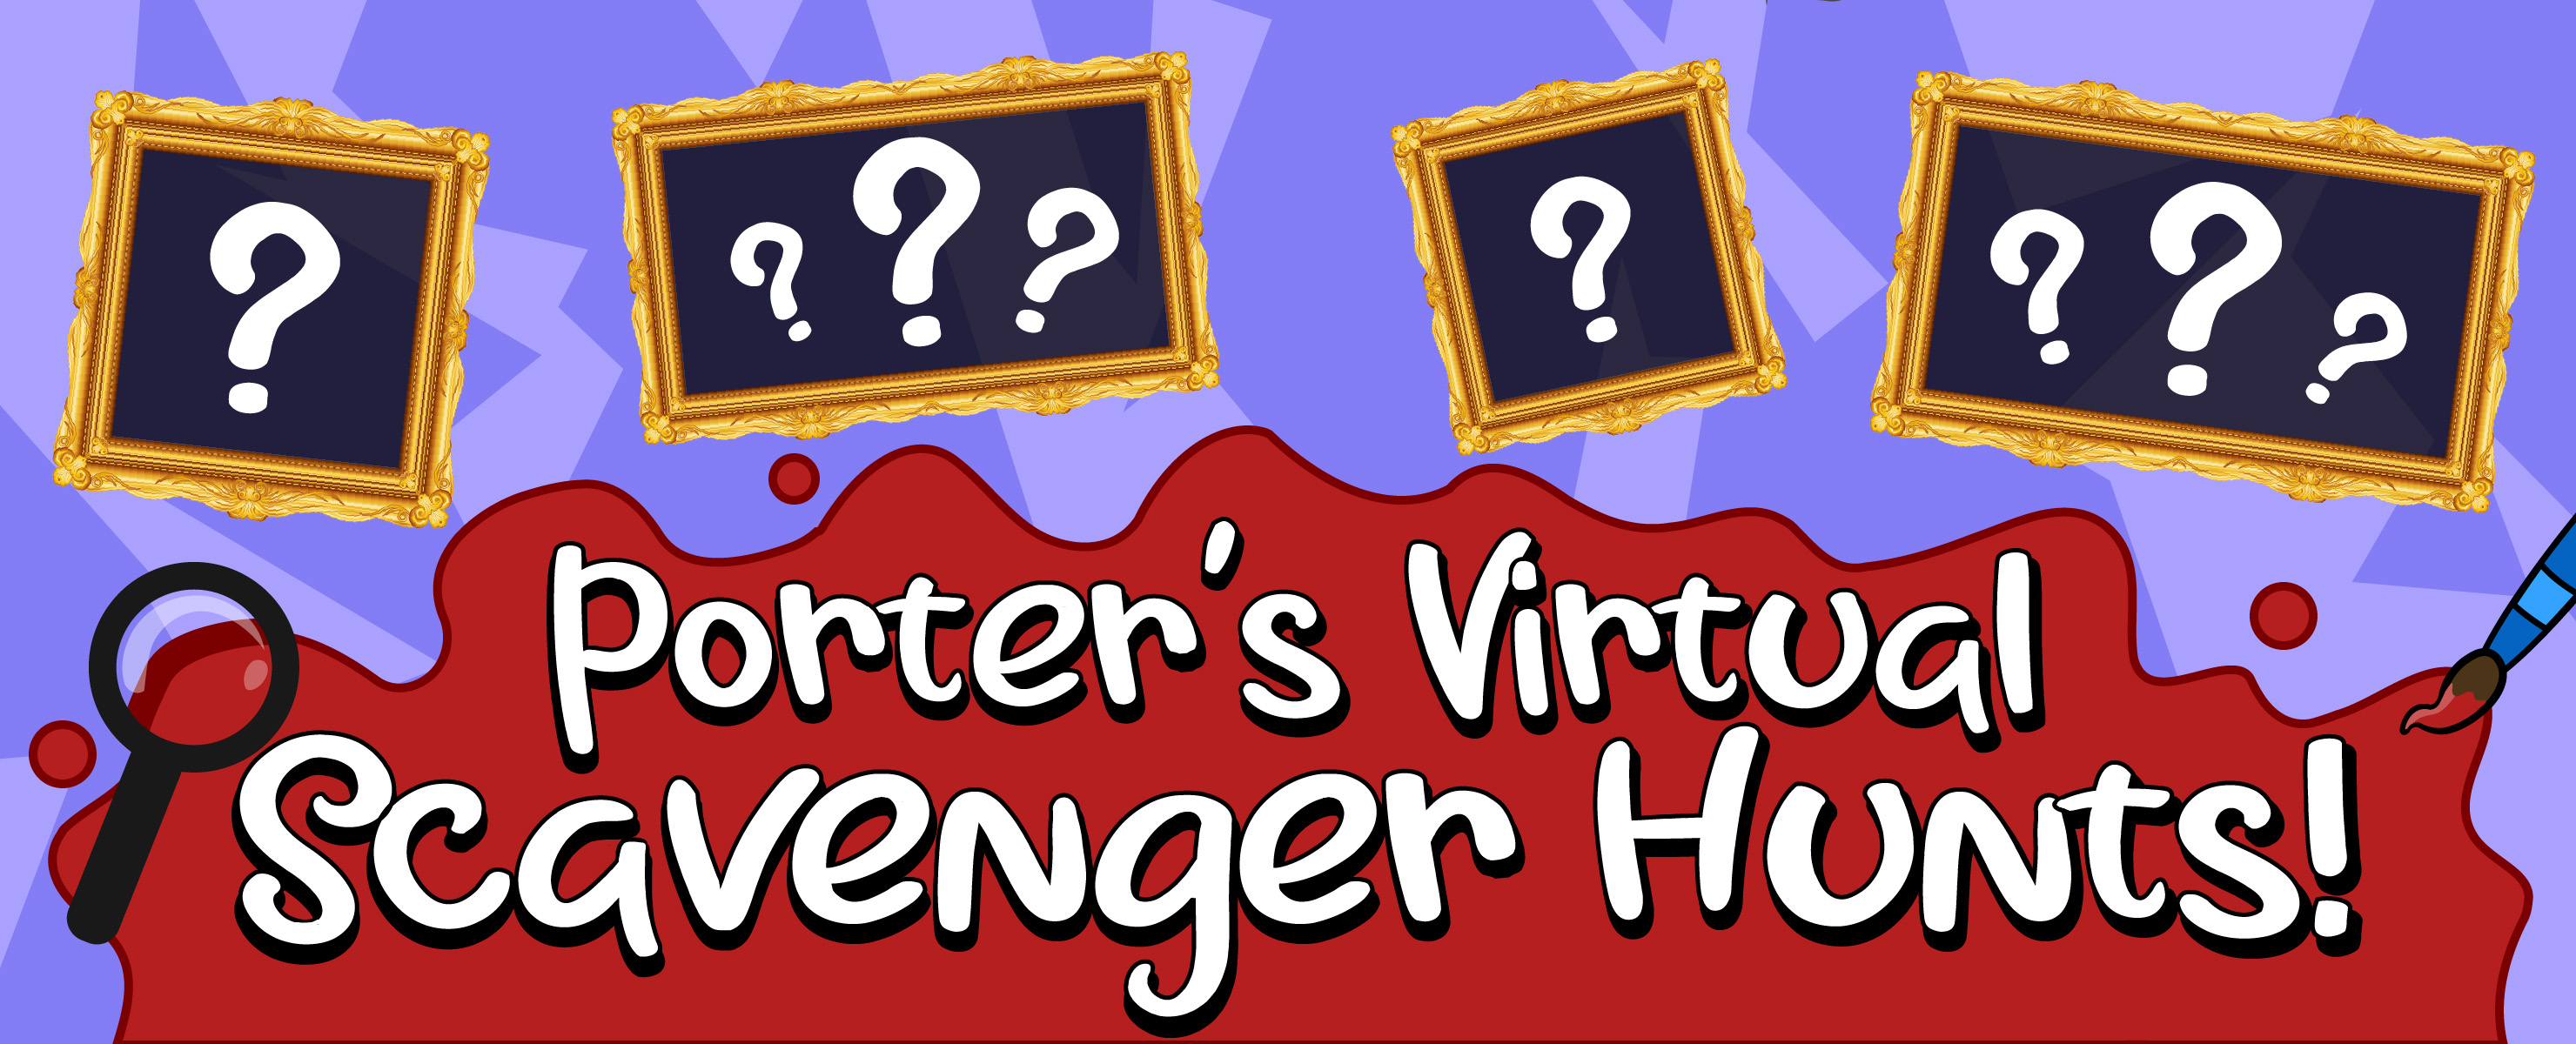 Porter's Virtual Scavenger Hunt!